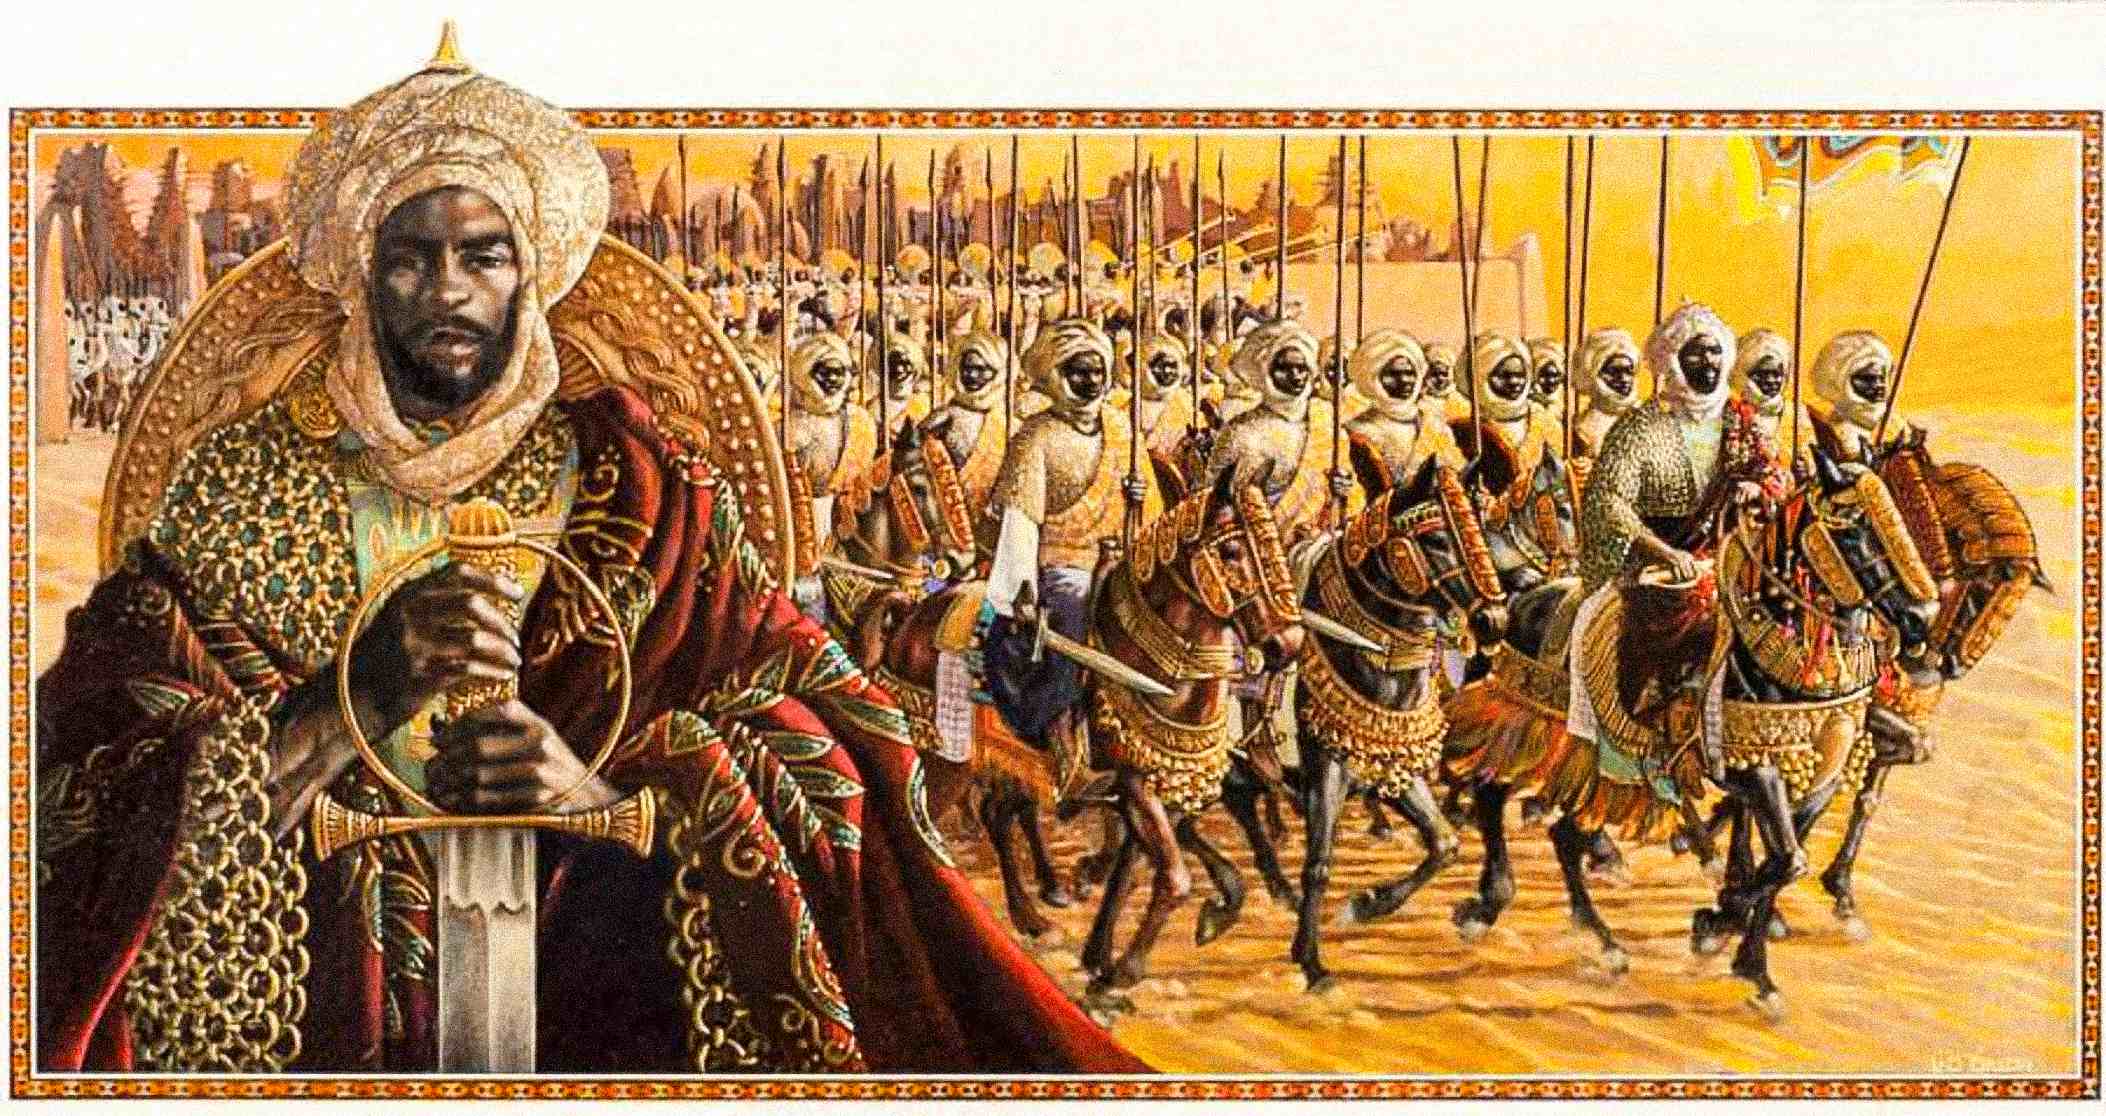 Representación artística del Imperio de Mansa Musa